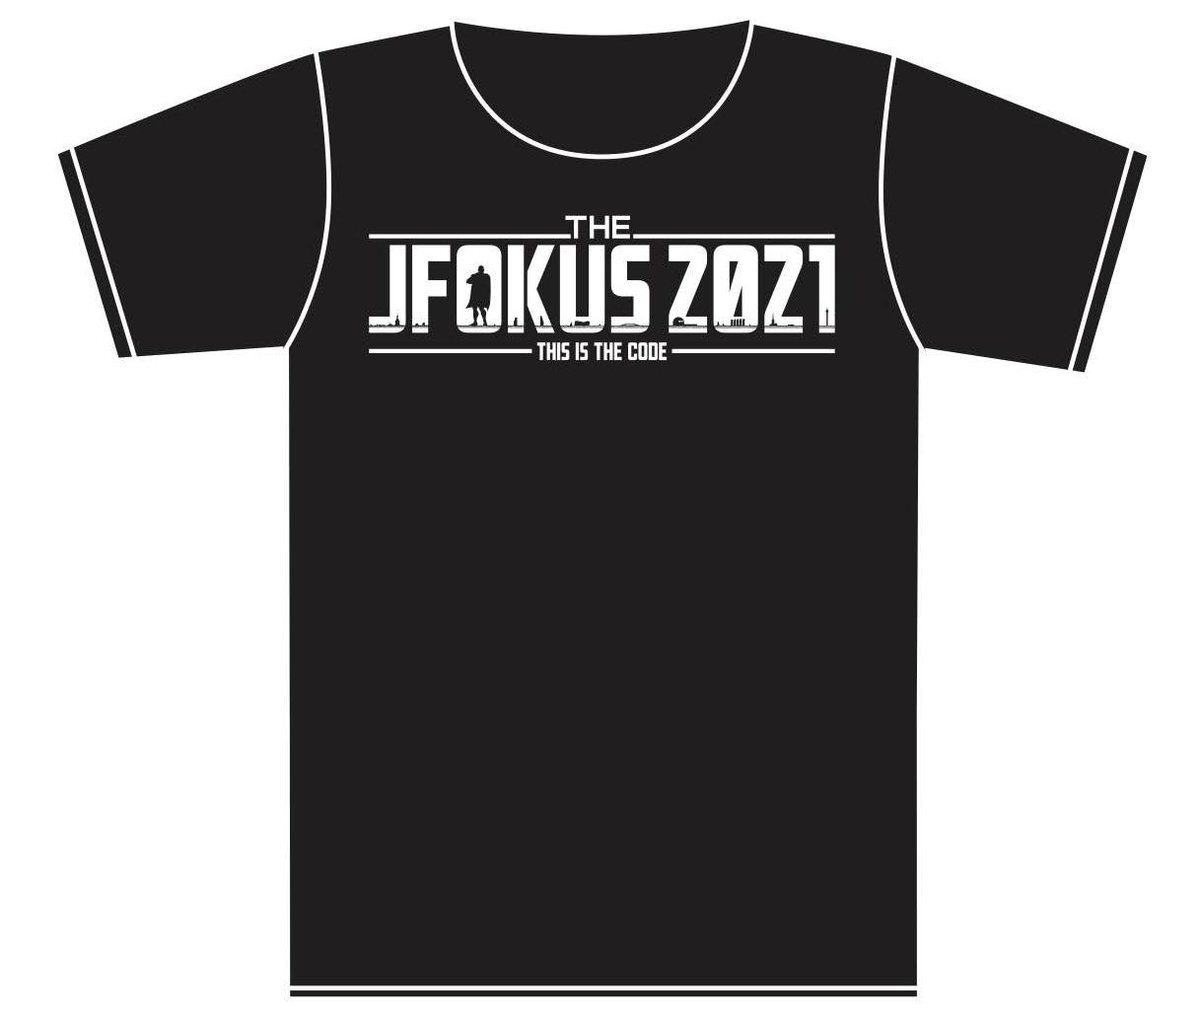 JFokus